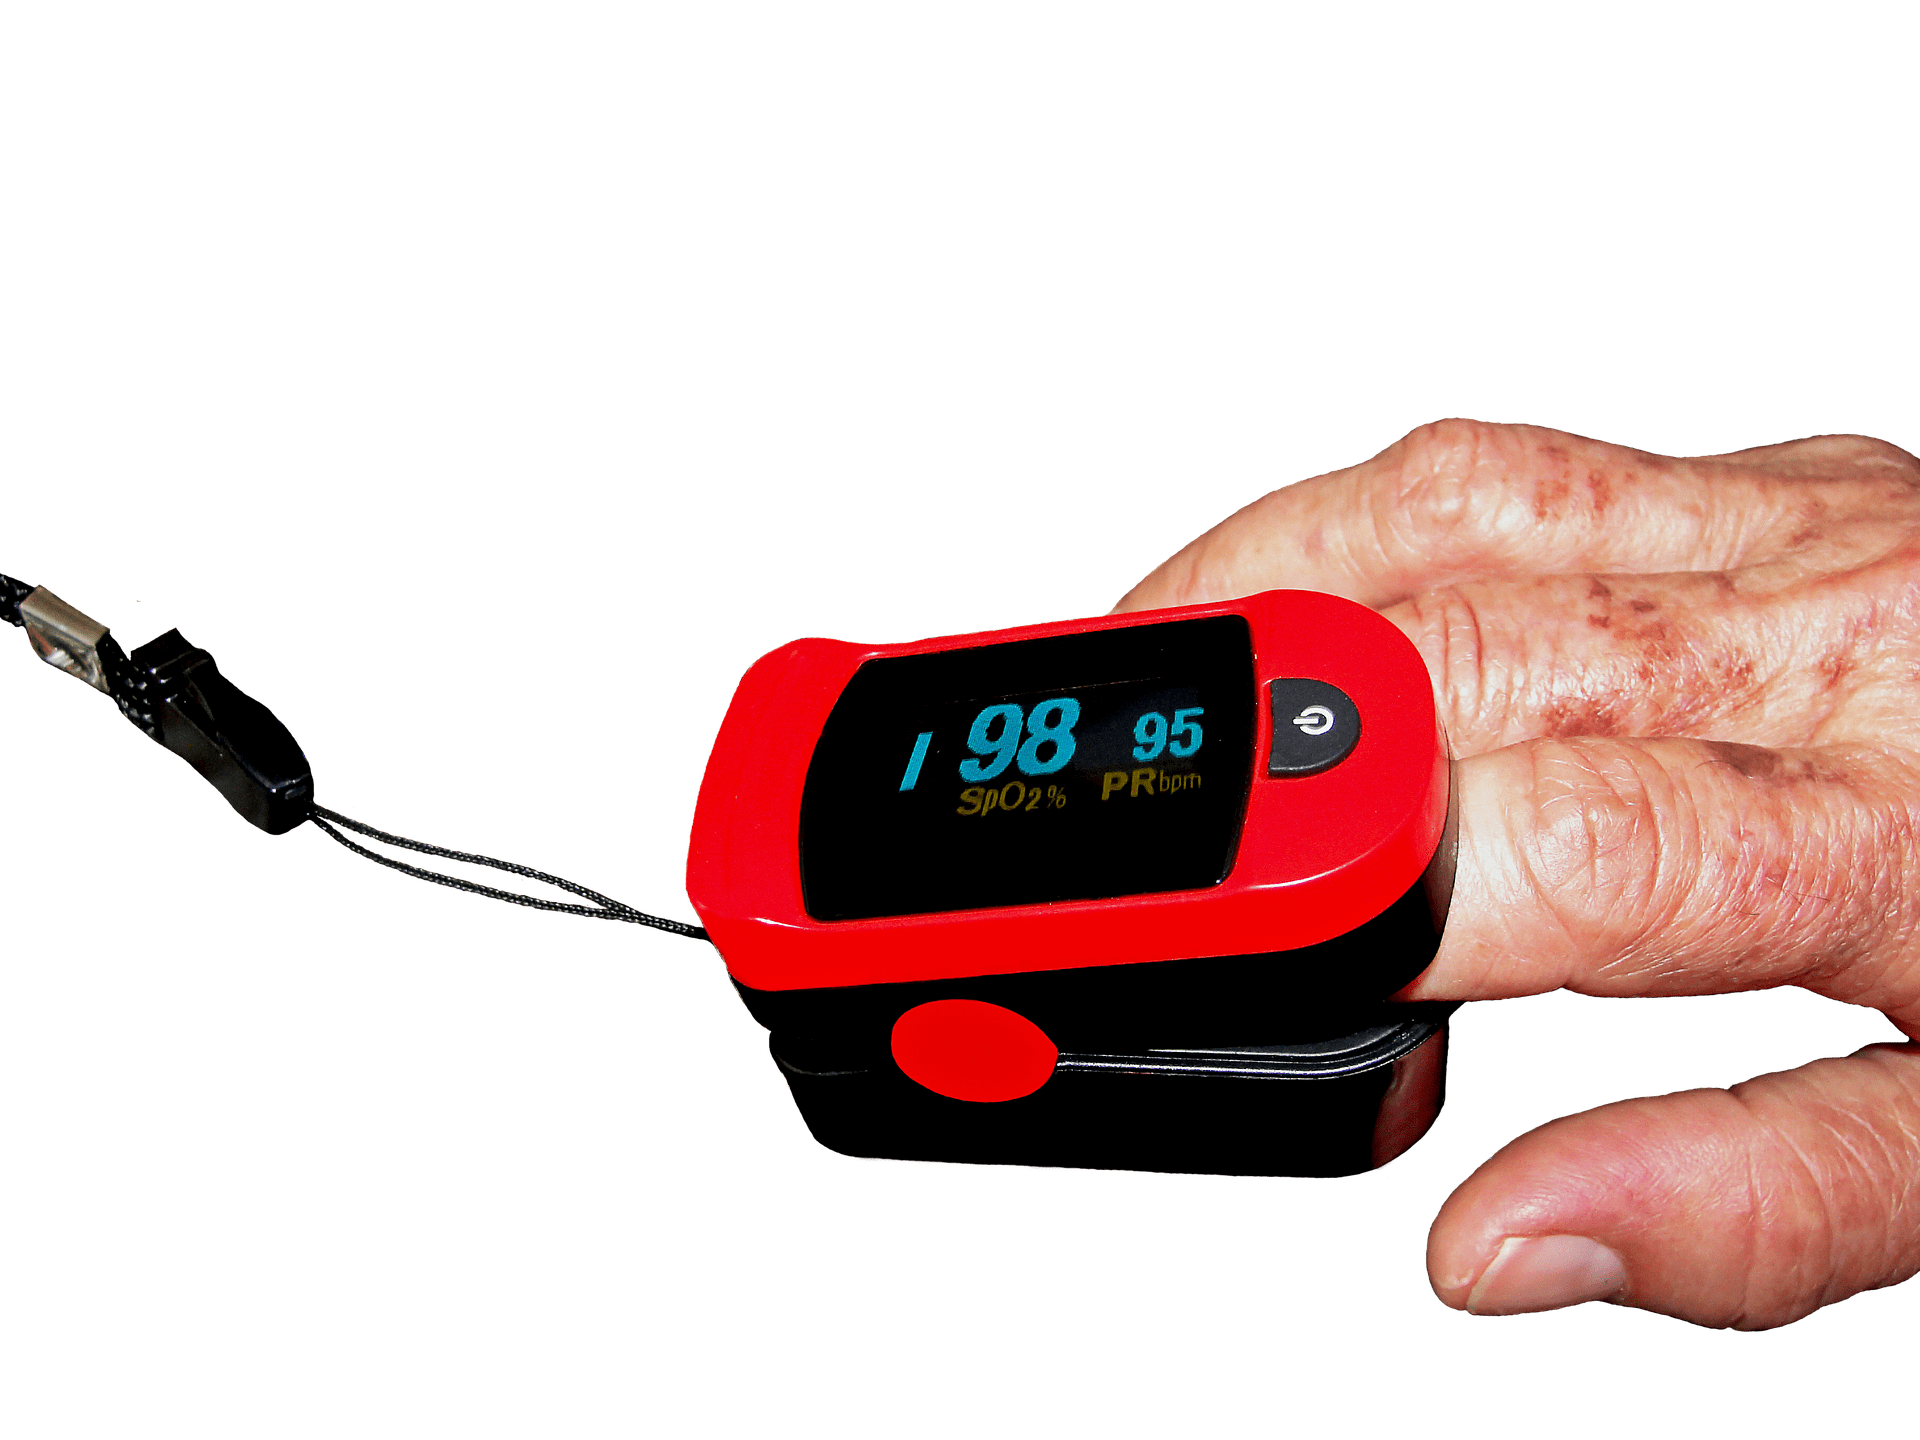 L'oxymètre de doigt un dispositif accessible pour surveiller son taux d' oxygène - Enerzine